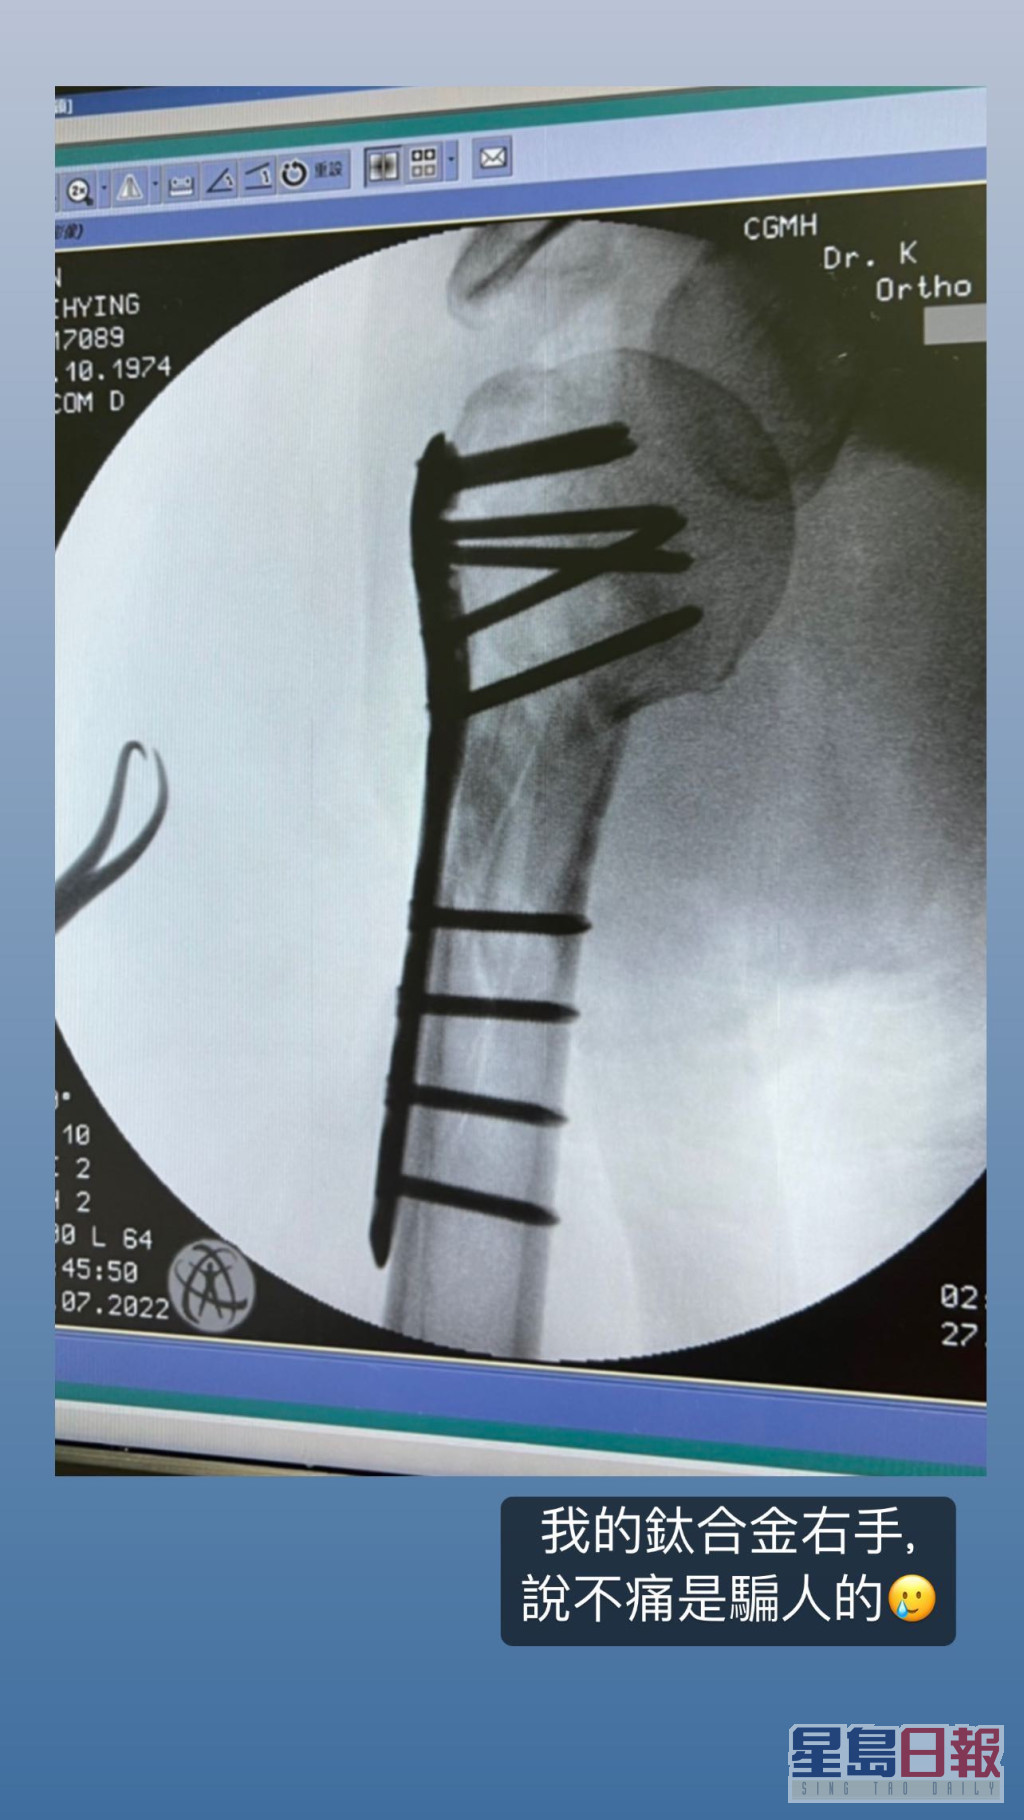 林志颖公开右臂的X光相，见到一排钢钉及钢板。